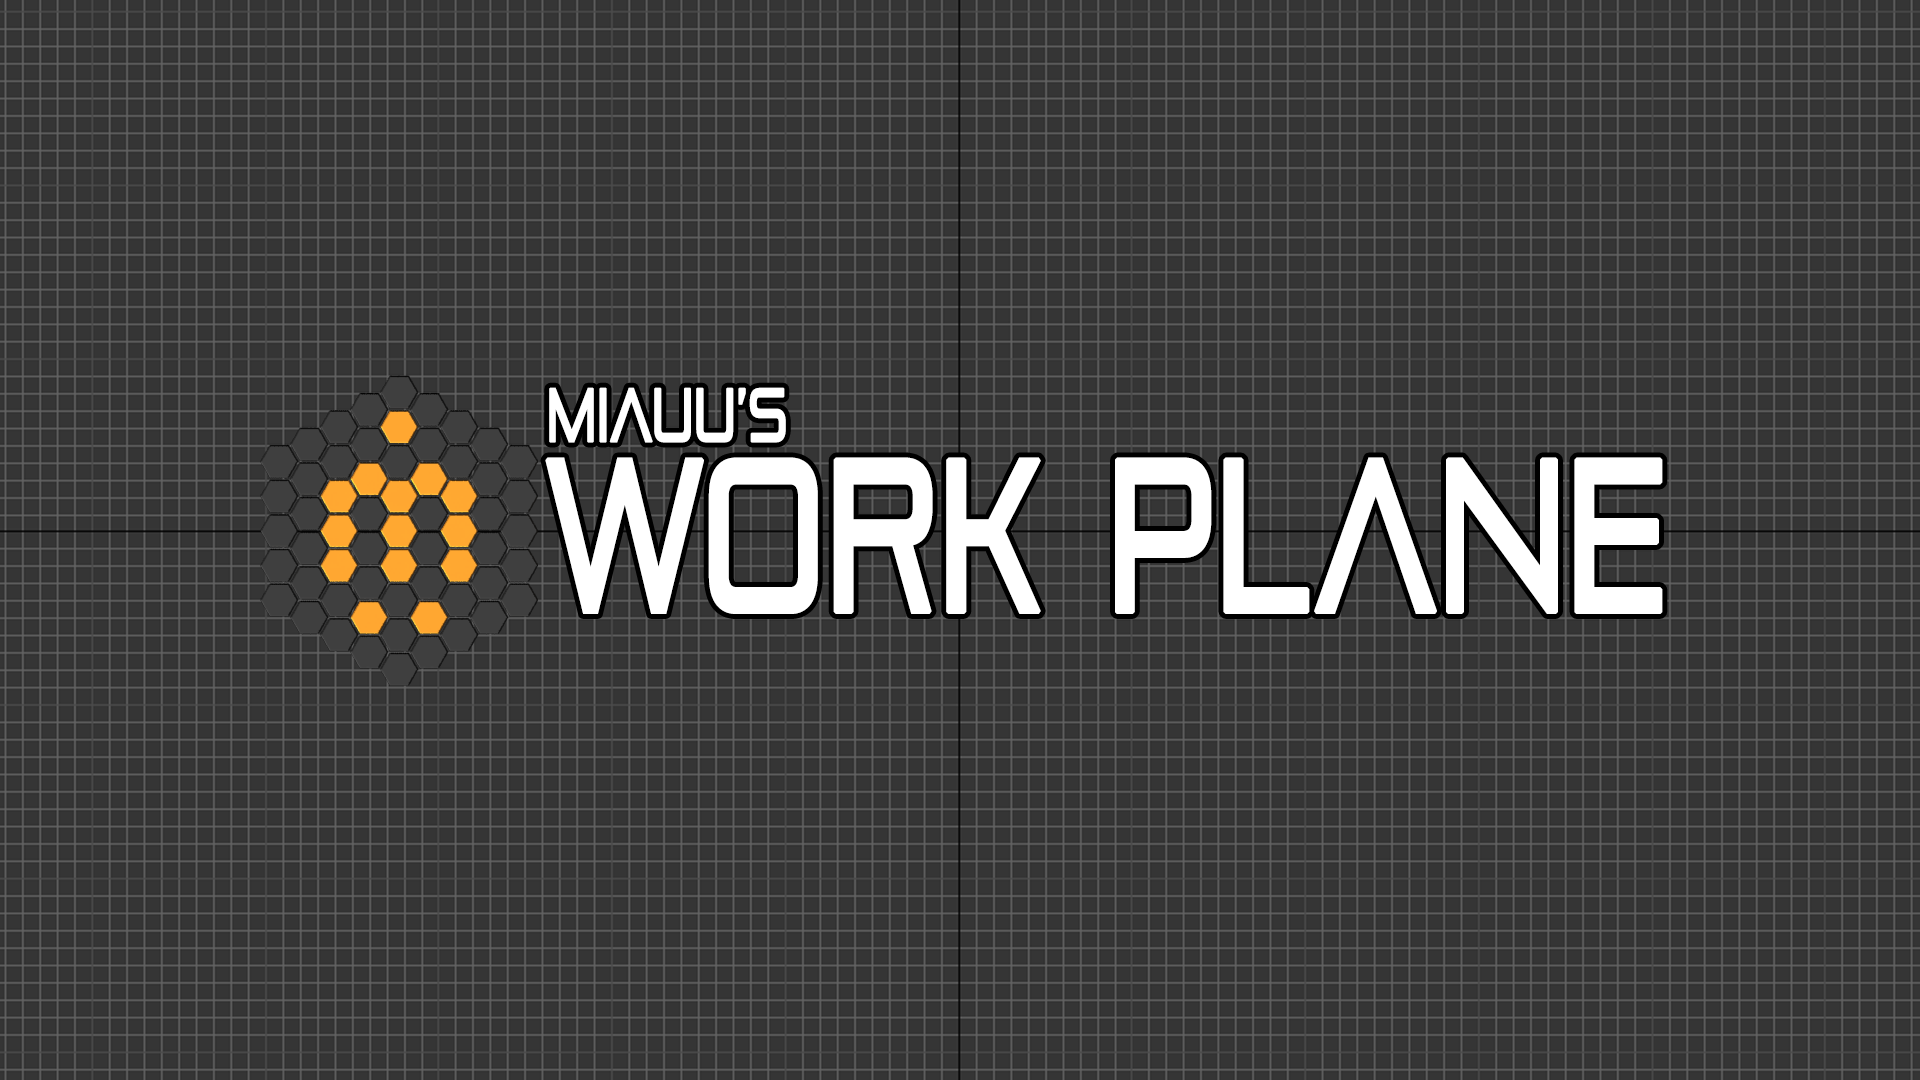 miauu's Plane miauu's Scripts & Tools 3ds Max